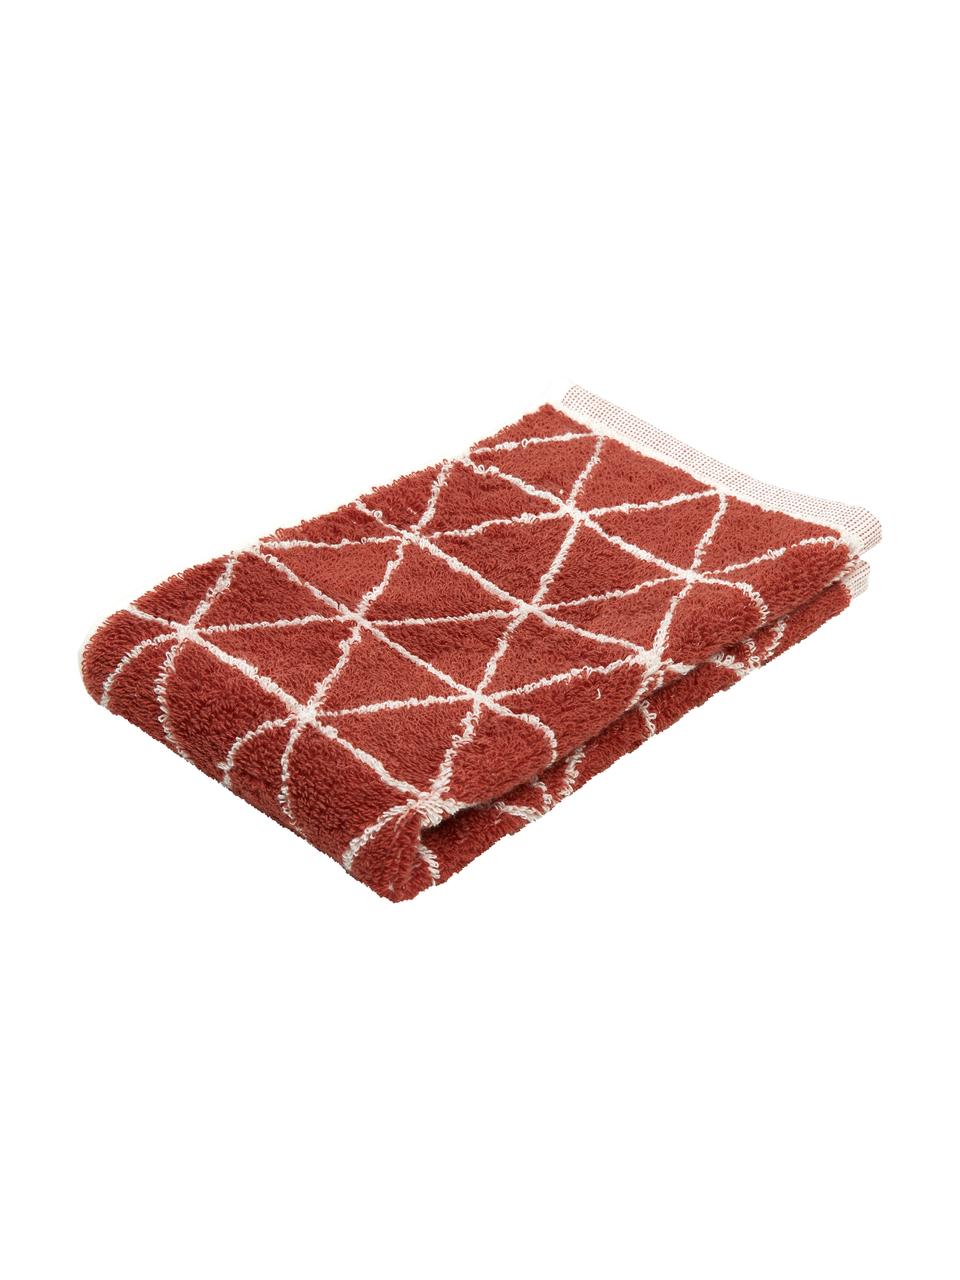 Dubbelzijdige handdoek Elina met grafisch patroon, 100% katoen, middelzware kwaliteit, 550 g/m², Terracottakleurig, crèmewit, Gastendoekje